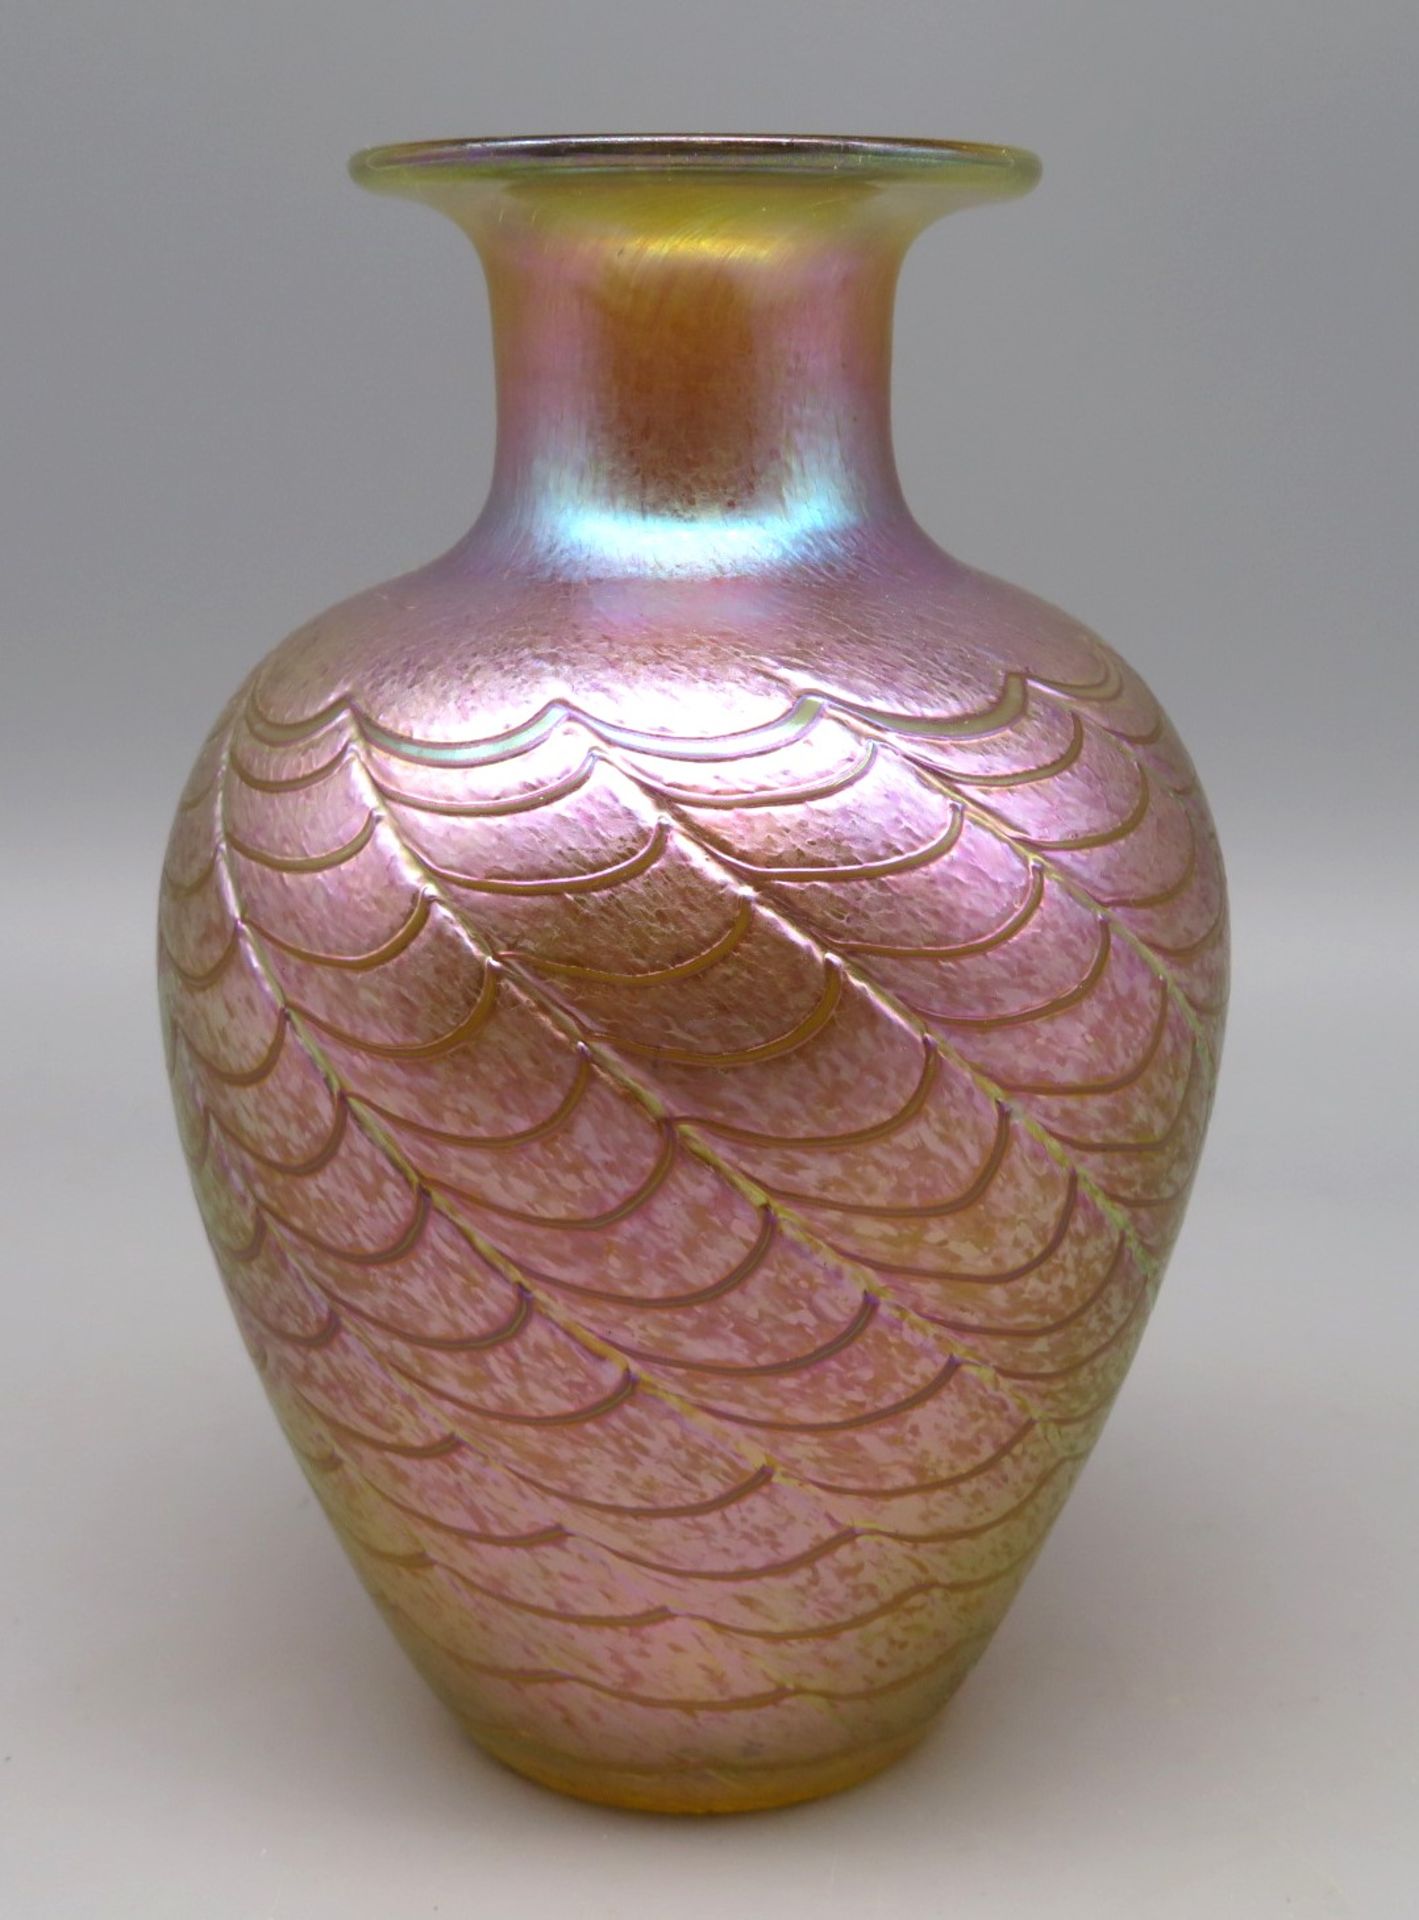 Designer Vase, Kanada, Robert Held, stark irisierendes Glas mit reliefiertem schuppenartigem, umlau